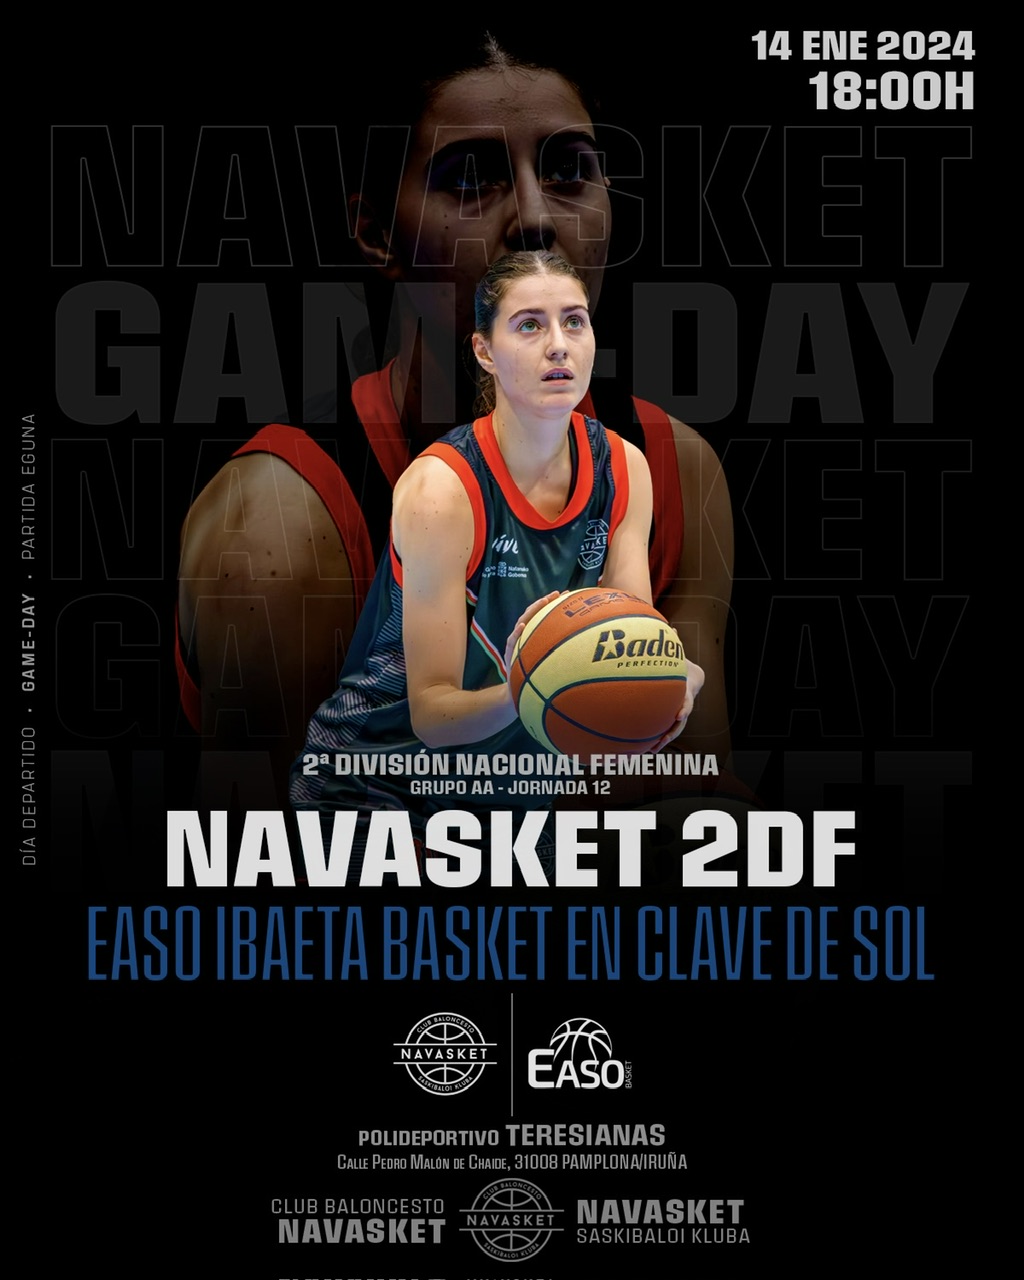 #2aFEM PREVIA | J.12 | Navasket 2DF Easo Ibaeta Basket En Clave De Sol